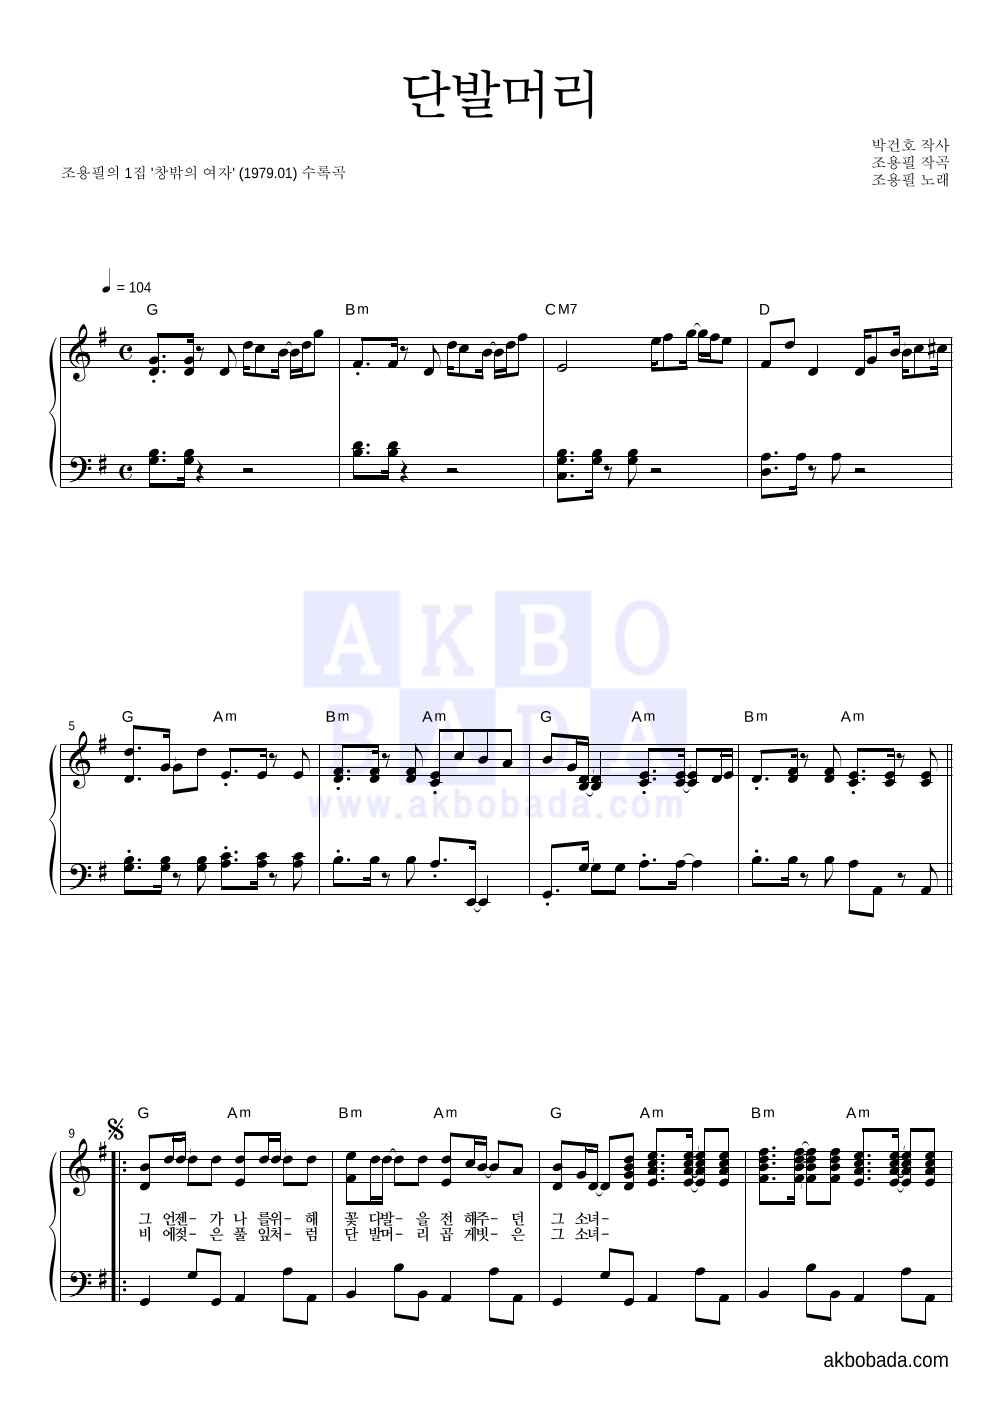 조용필 - 단발머리 피아노 2단 악보 